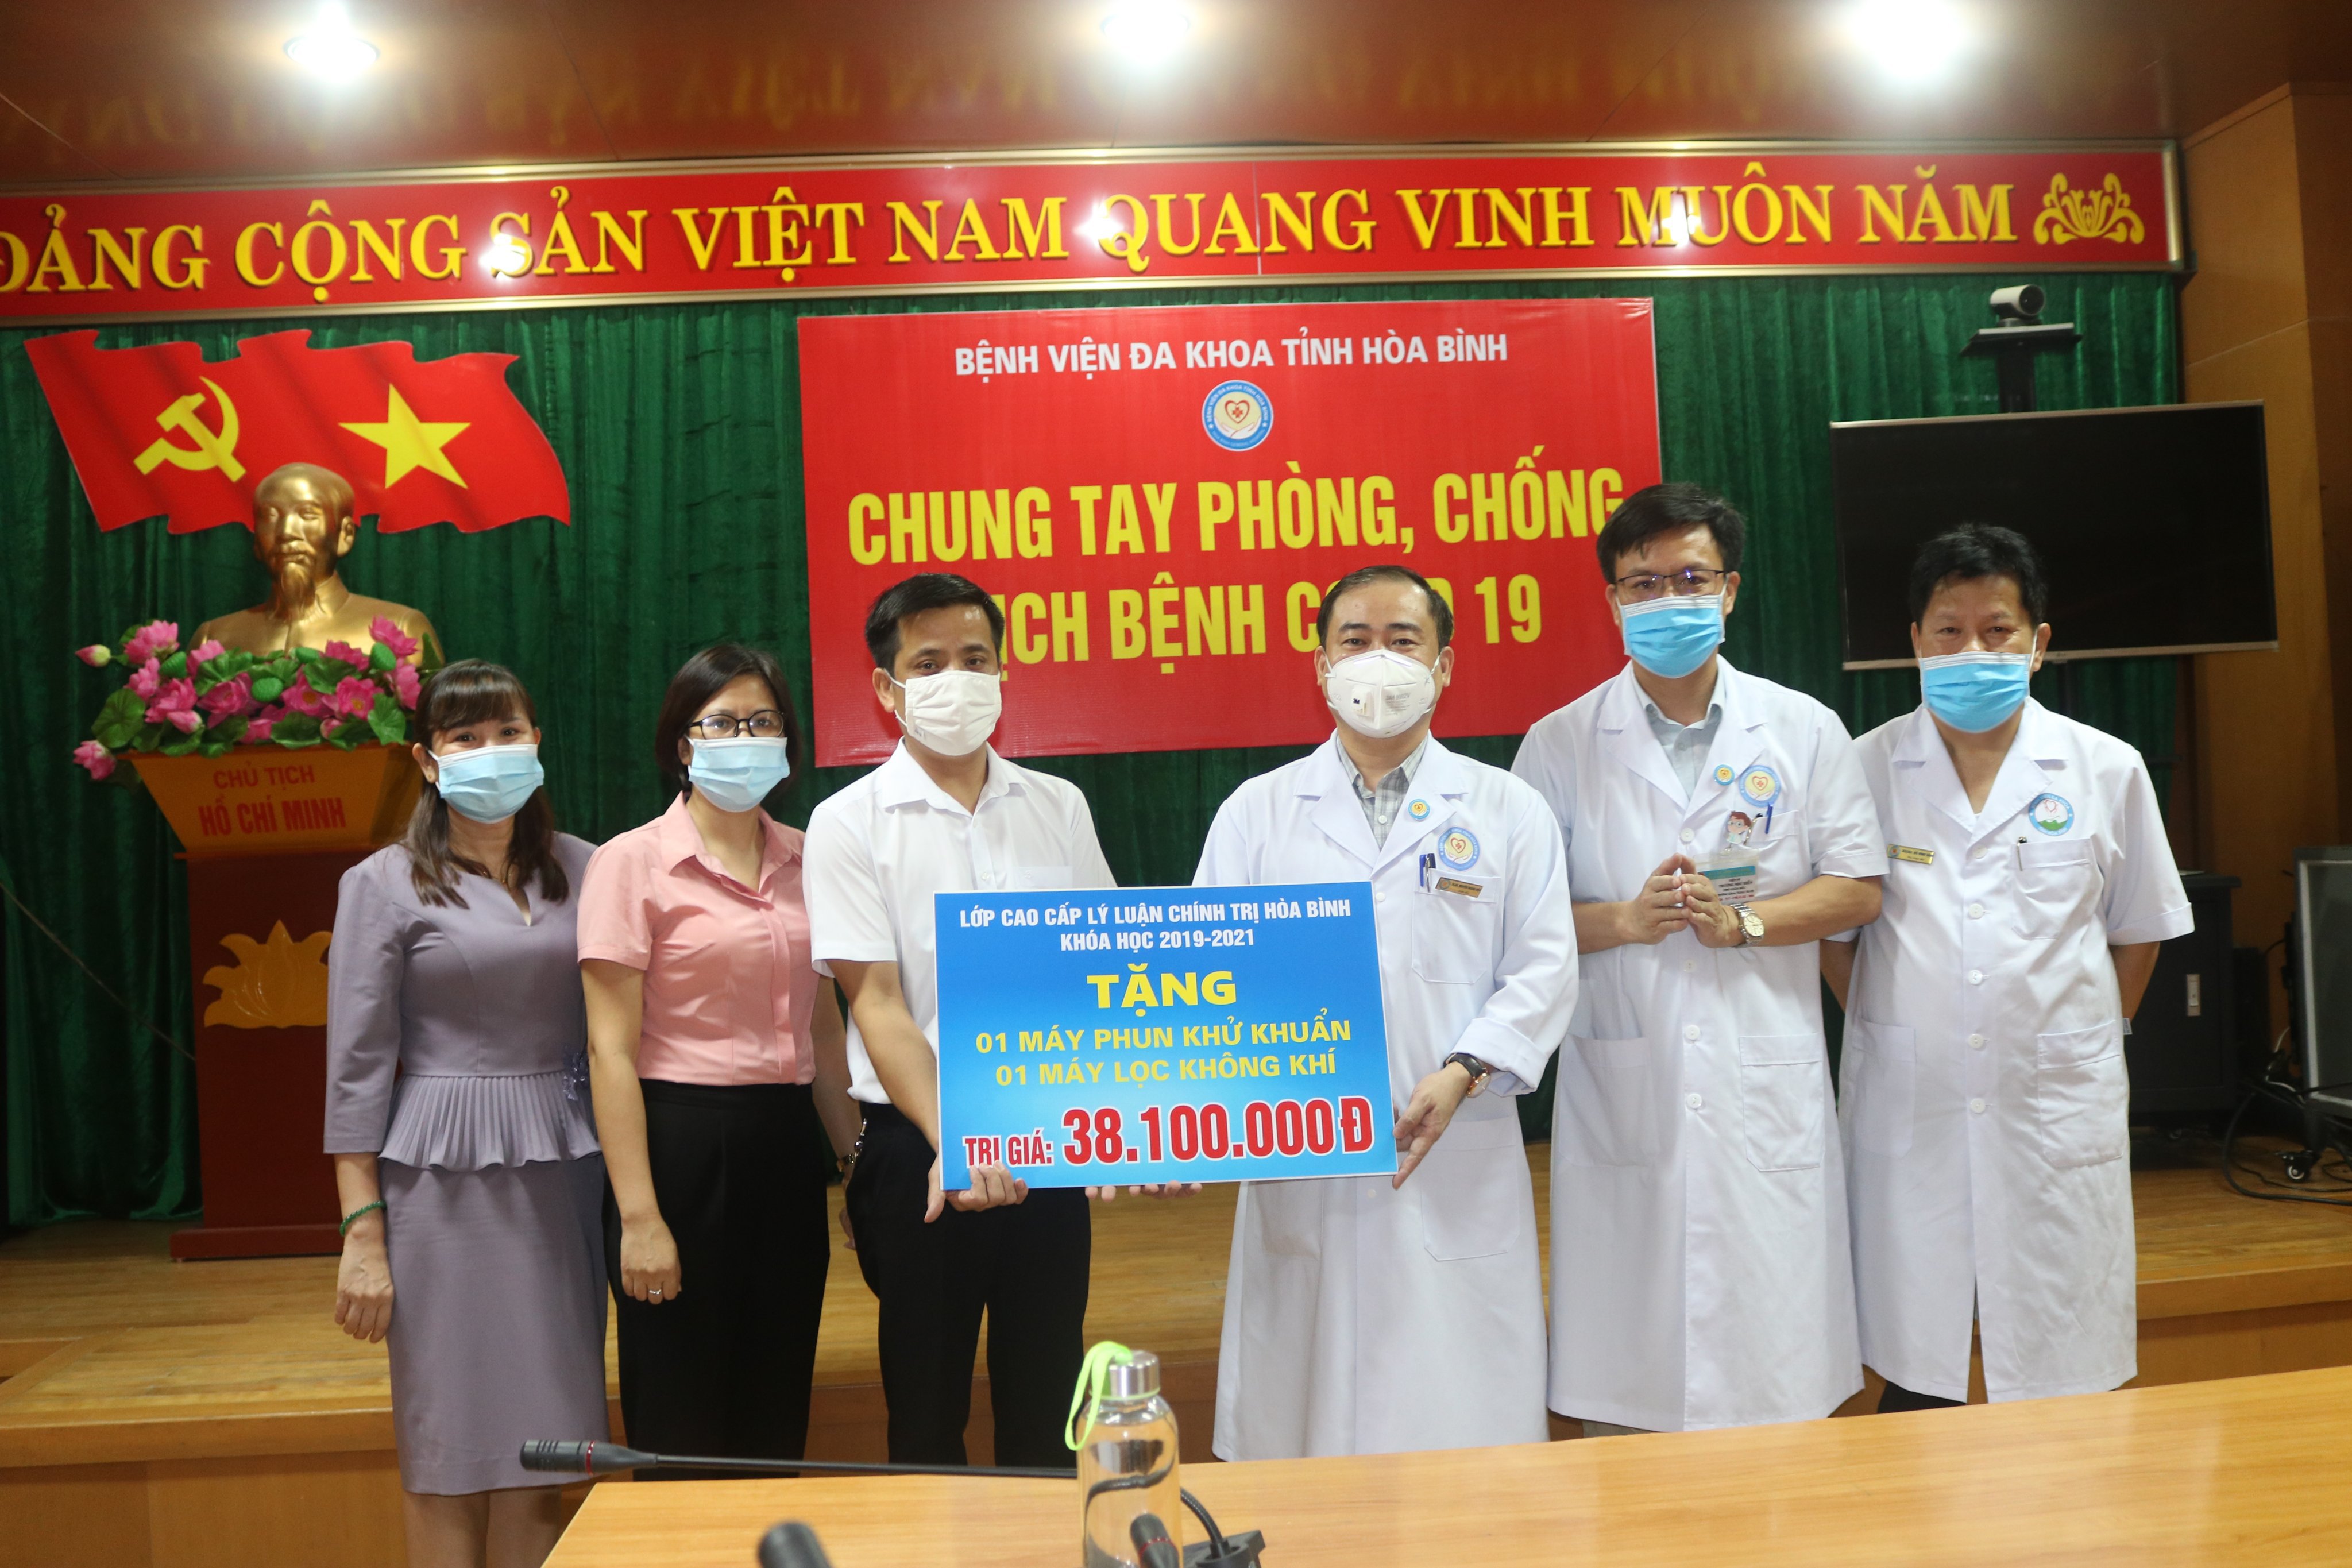 Lớp Cao cấp lý luận chính trị tỉnh Hòa Bình khoá 2019-2021 tặng quà phòng chống dịch cho Bệnh viện Đa khoa tỉnh